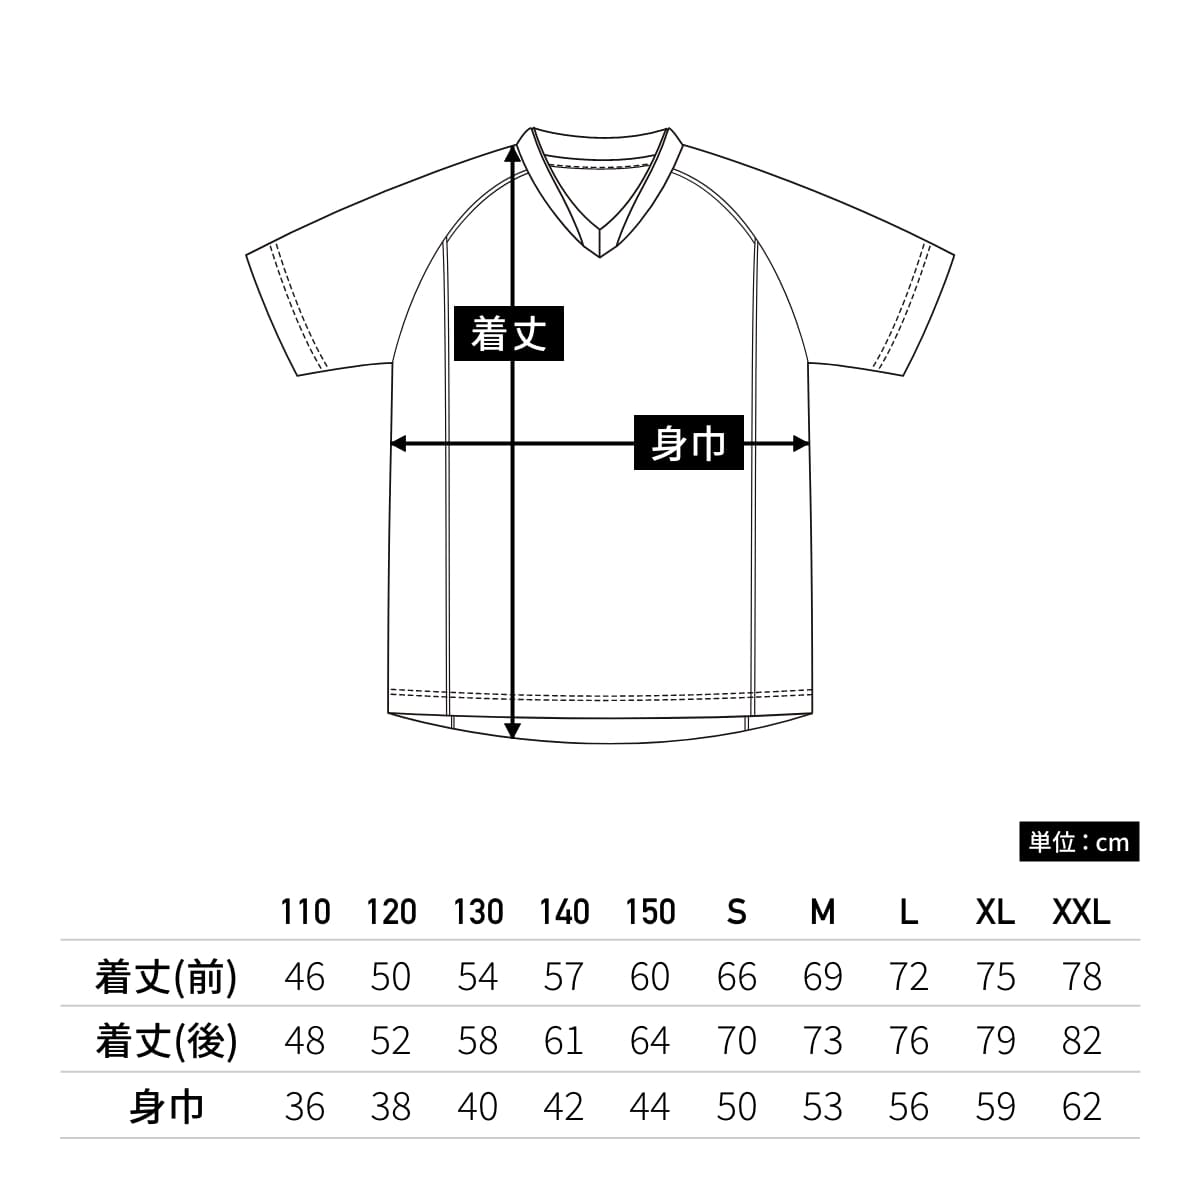 【送料無料】ベーシックサッカーシャツ | ユニフォーム | 1枚 | P1910 | レッド